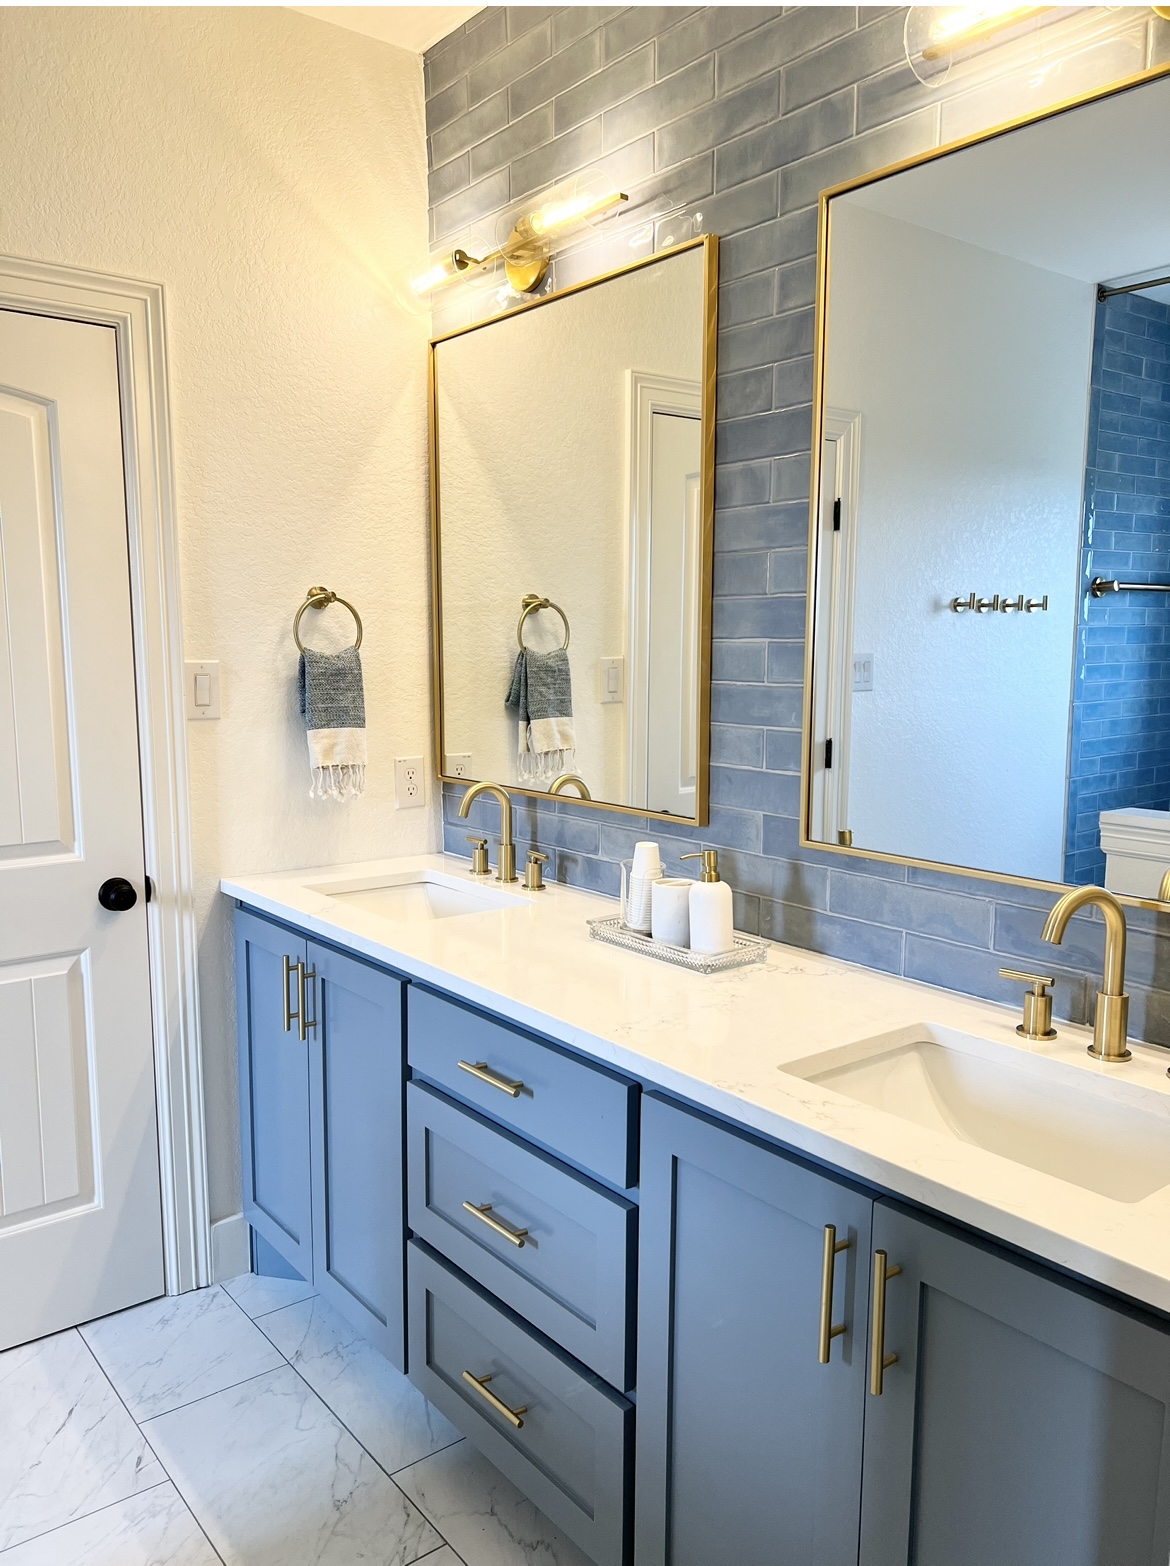 Jack 'n Jill bathroom interior design by San Antonio Interior designer Revive Design